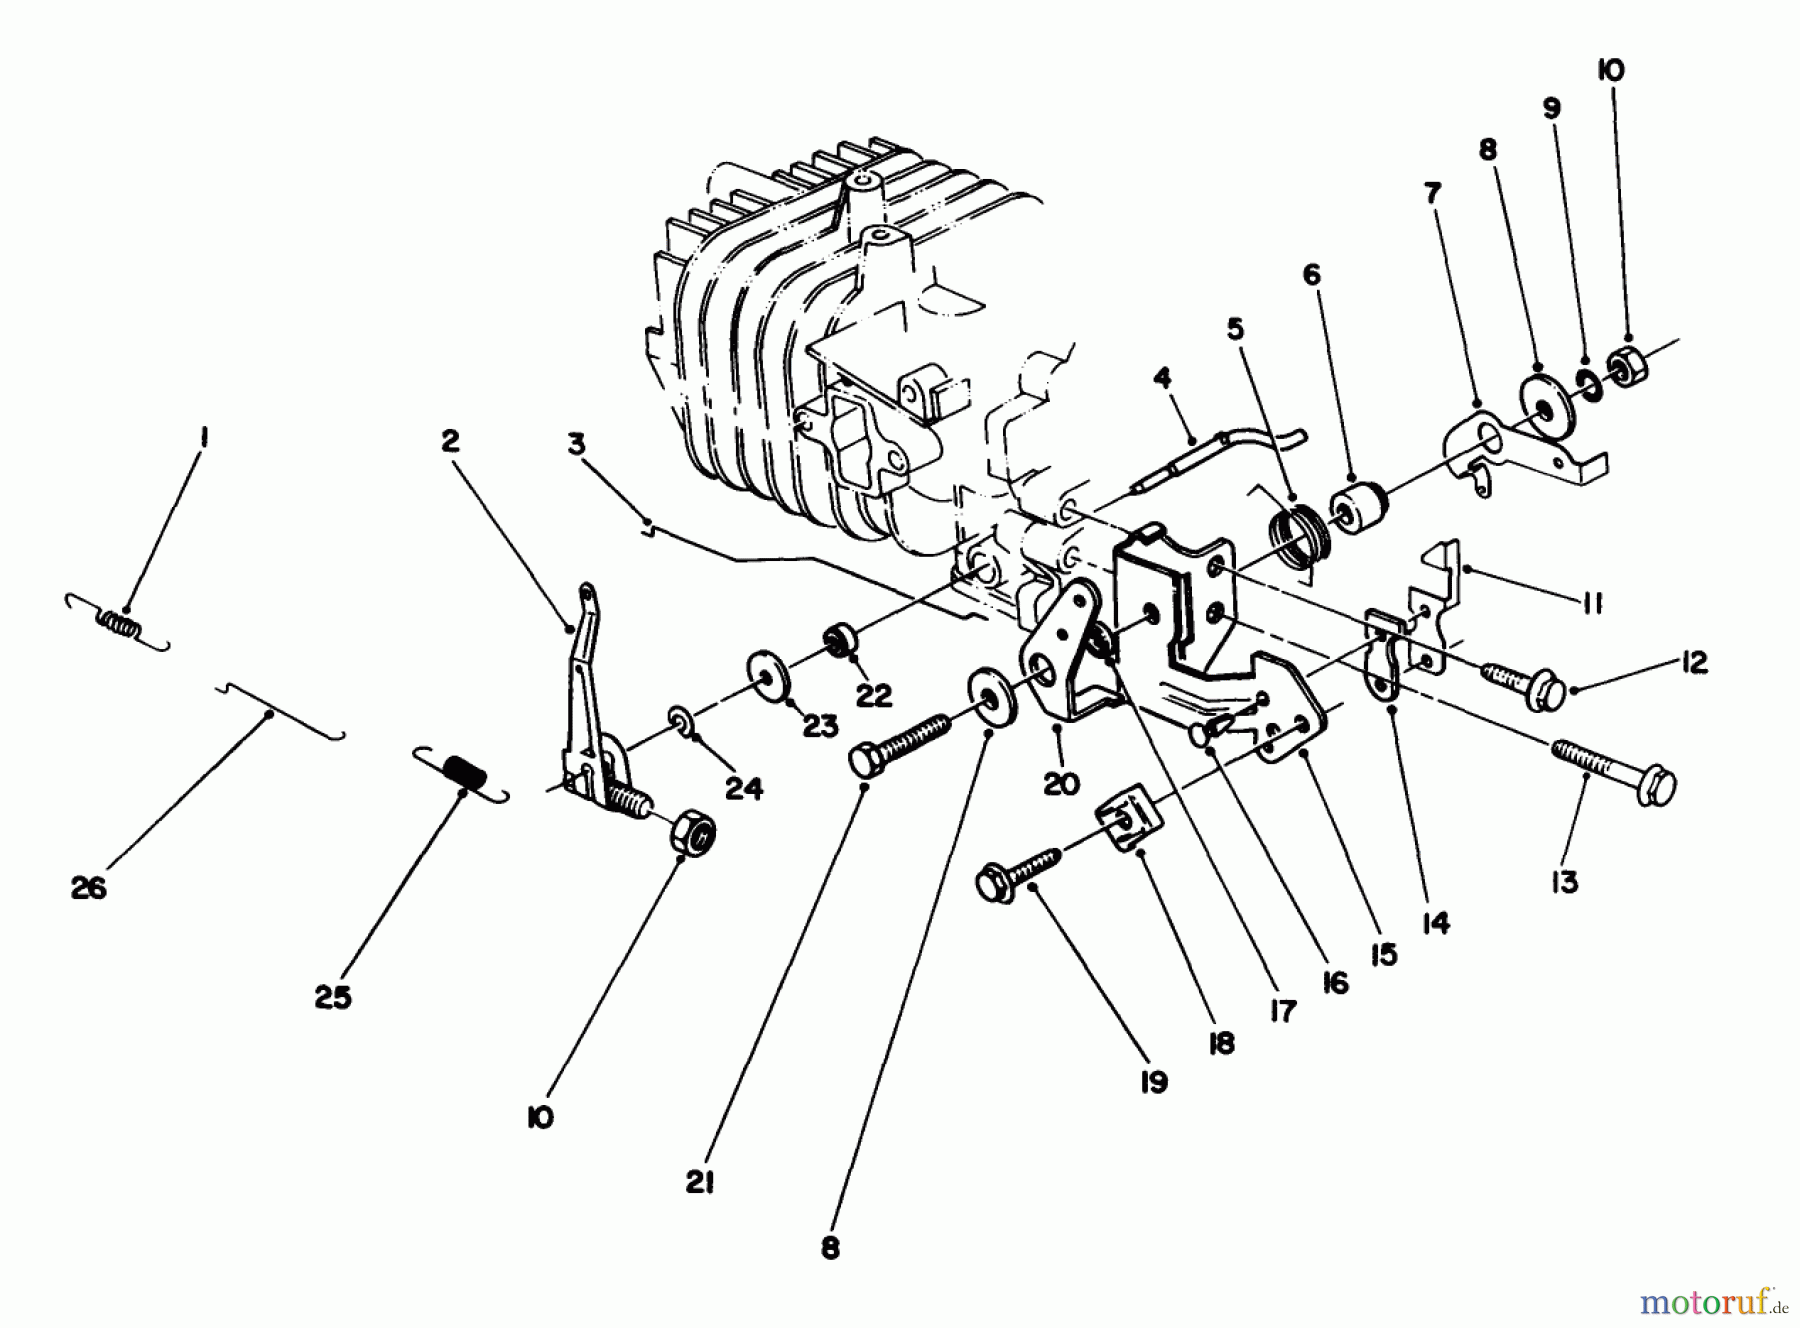  Toro Neu Mowers, Walk-Behind Seite 2 22025C - Toro Lawnmower, 1989 (9000001-9999999) ENGINE ASSEMBLY MODEL NO. 47PJ8 #4